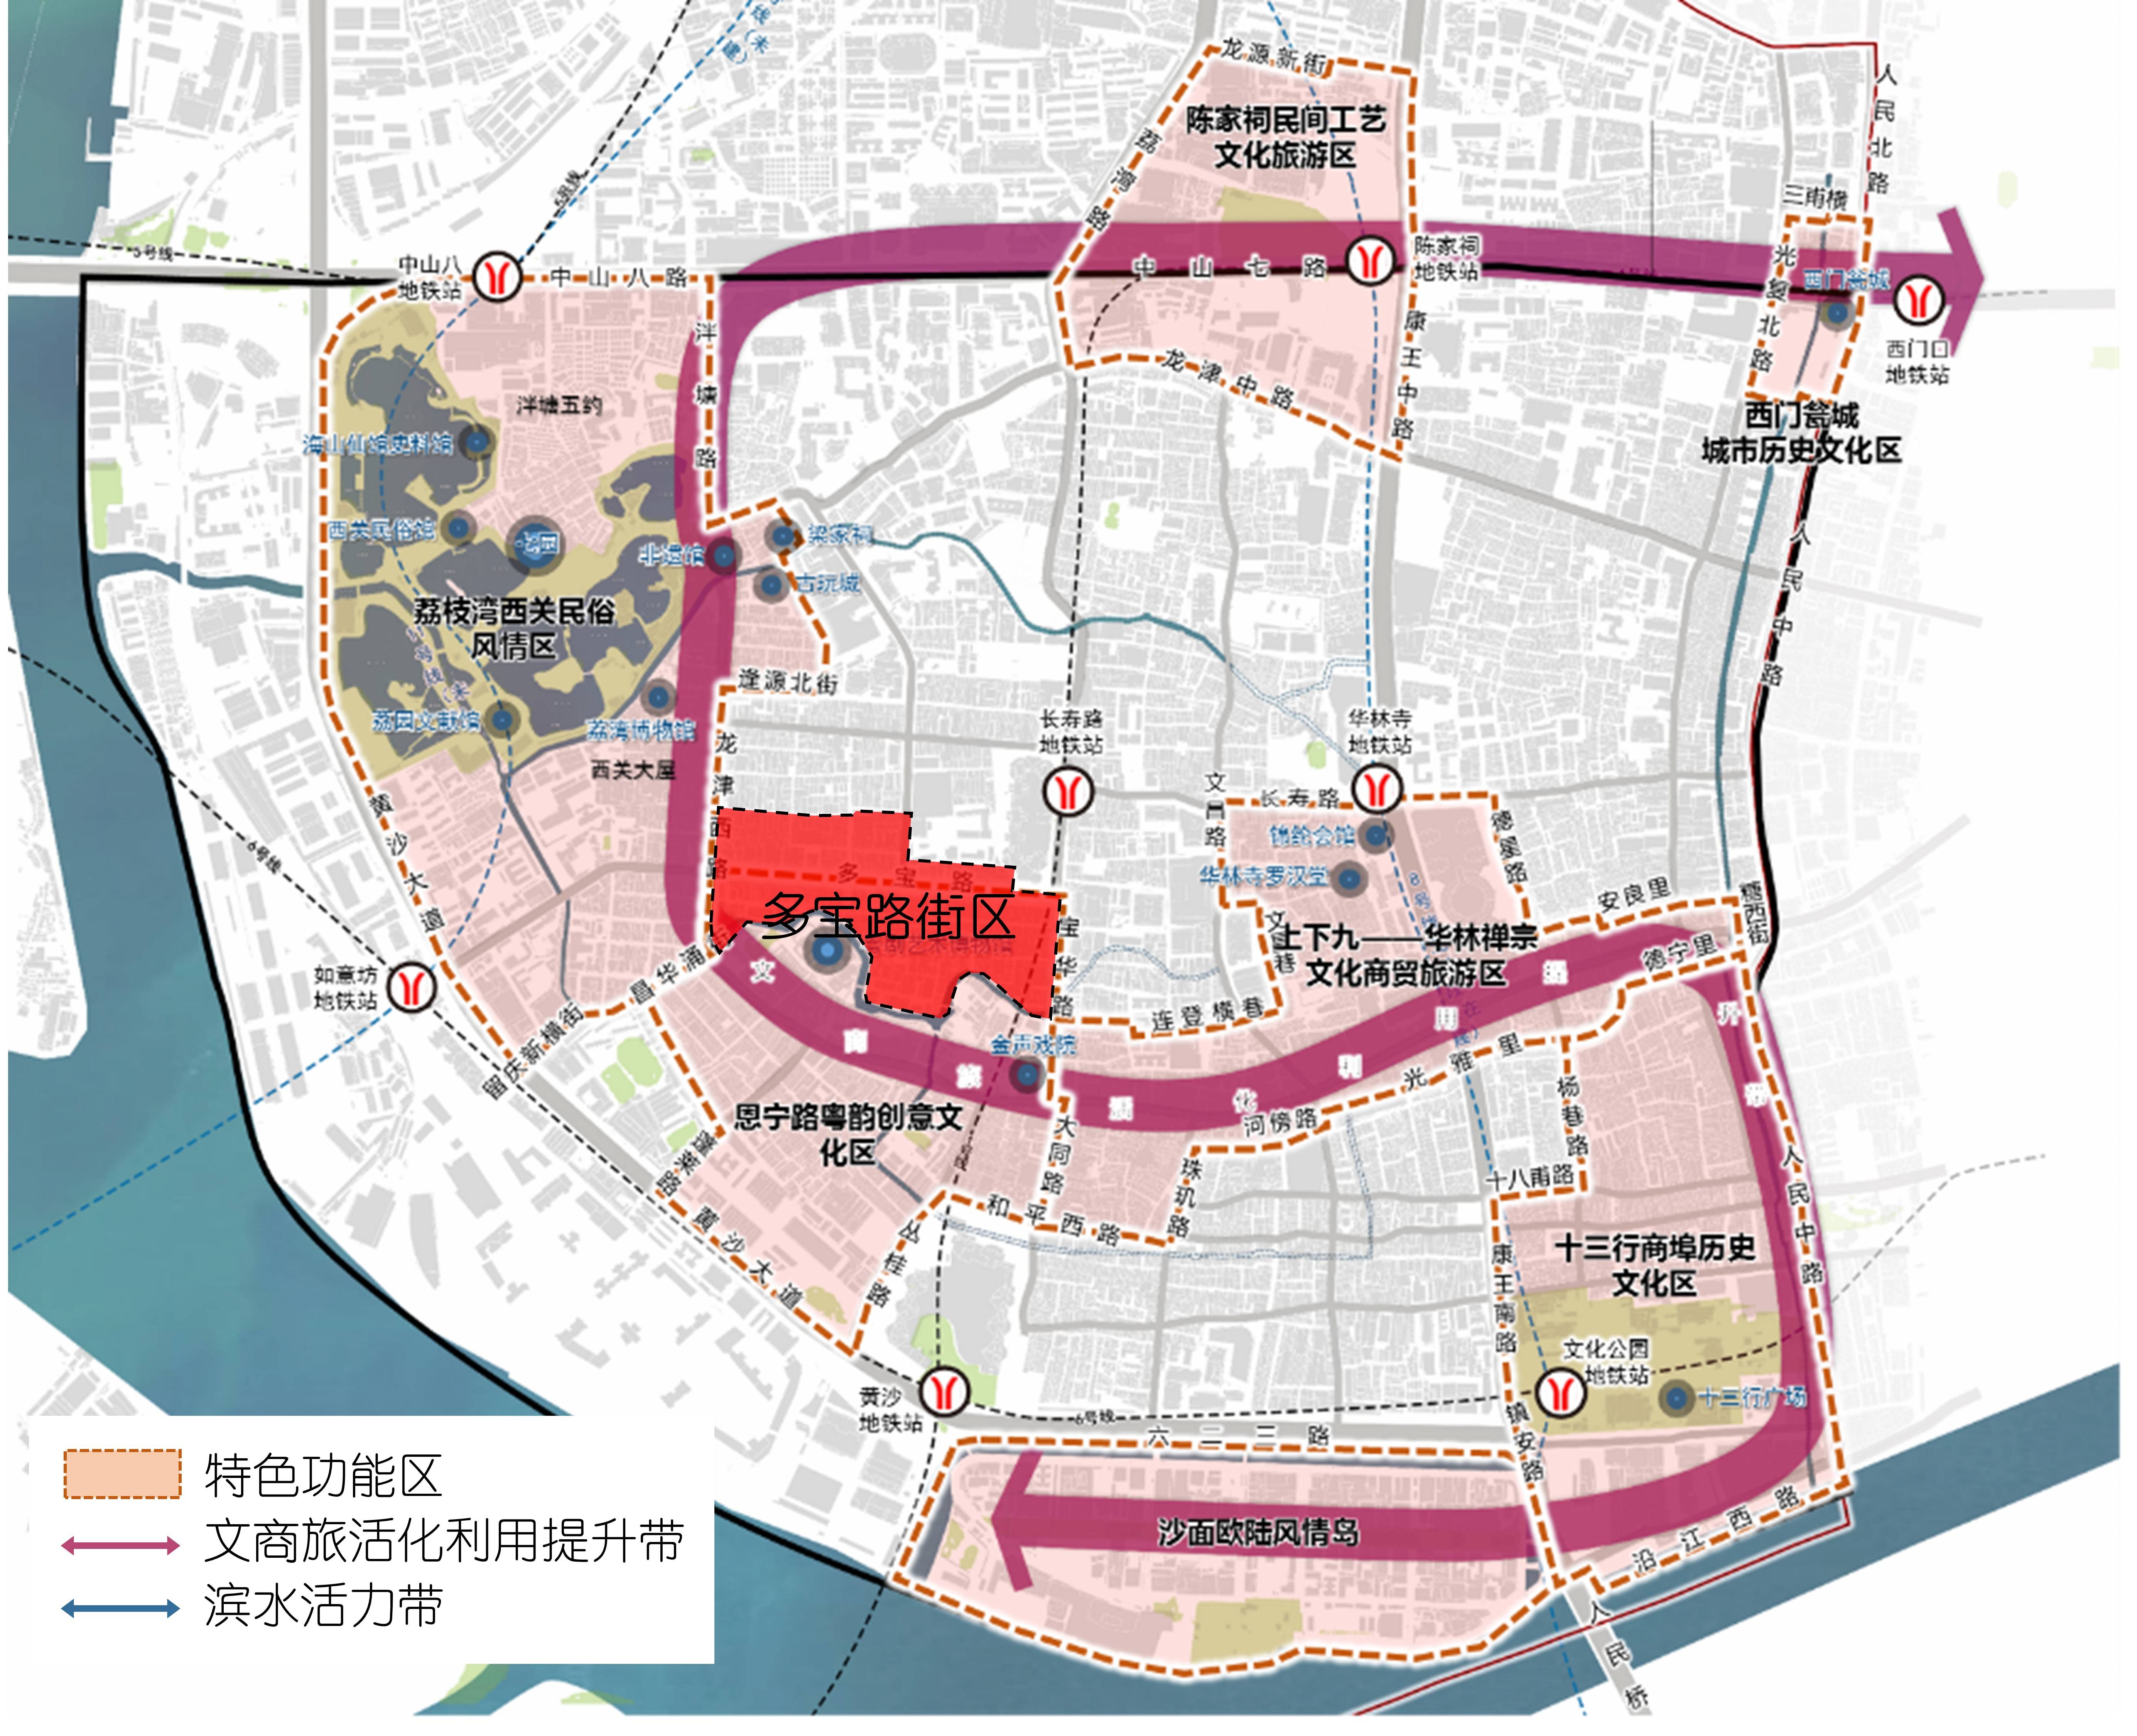 广州西关两大历史文化街区规划通过将在此建永庆坊三期